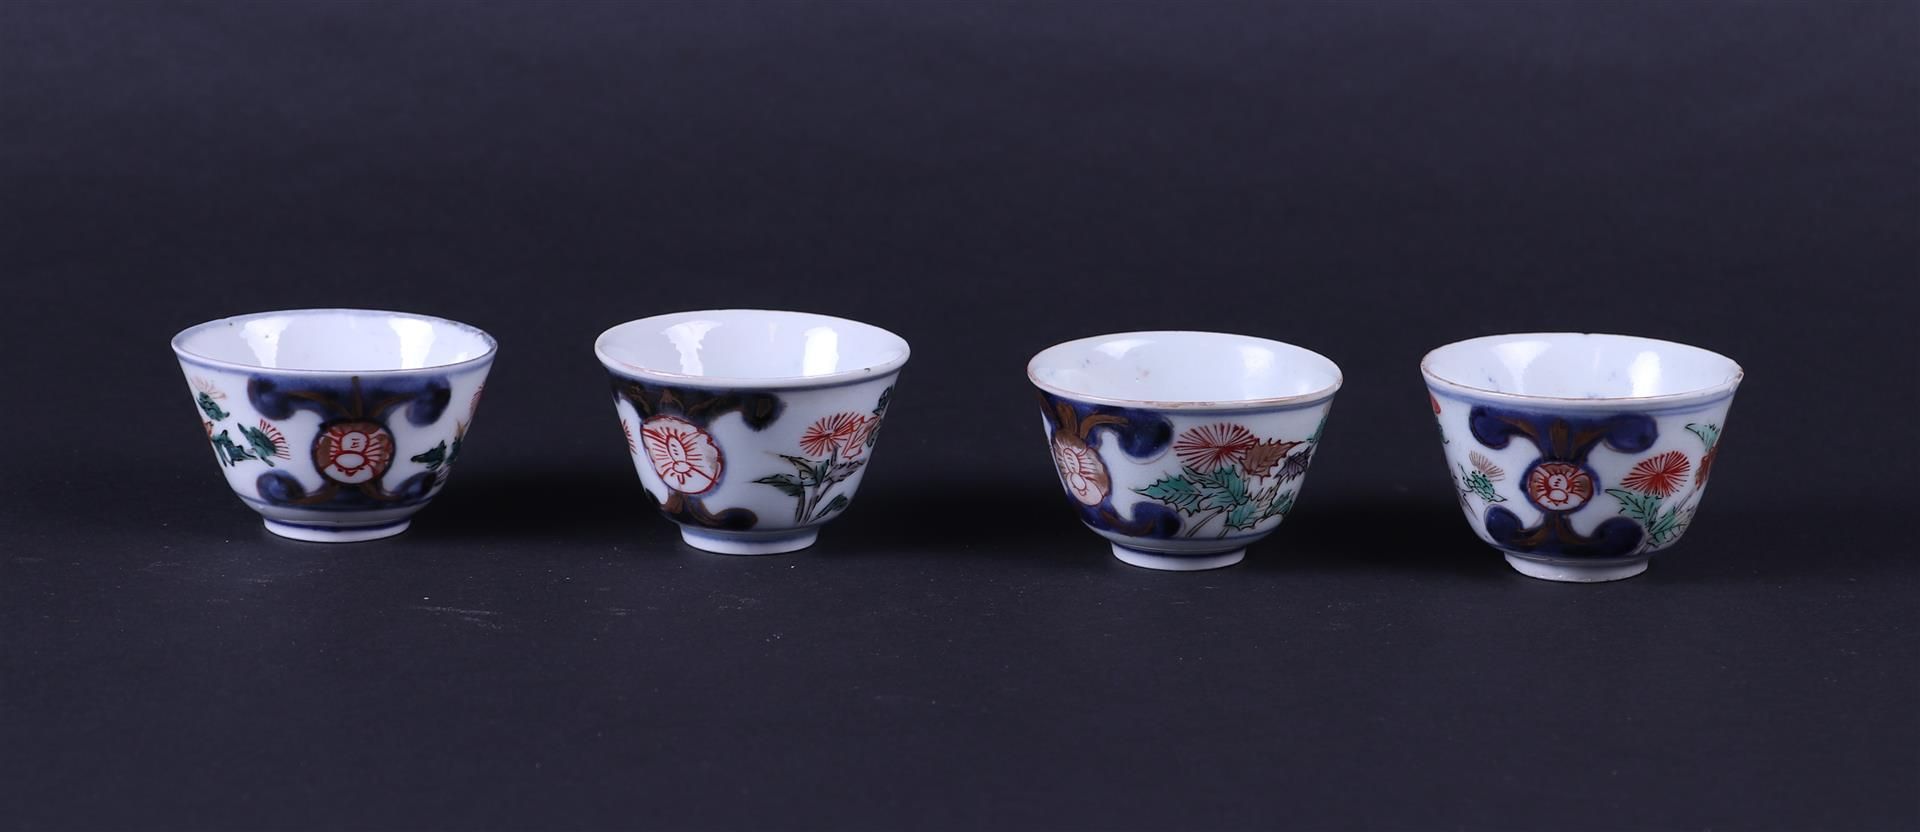 A set of four porcelain Imari bowls. China/Japan, circa 1700.